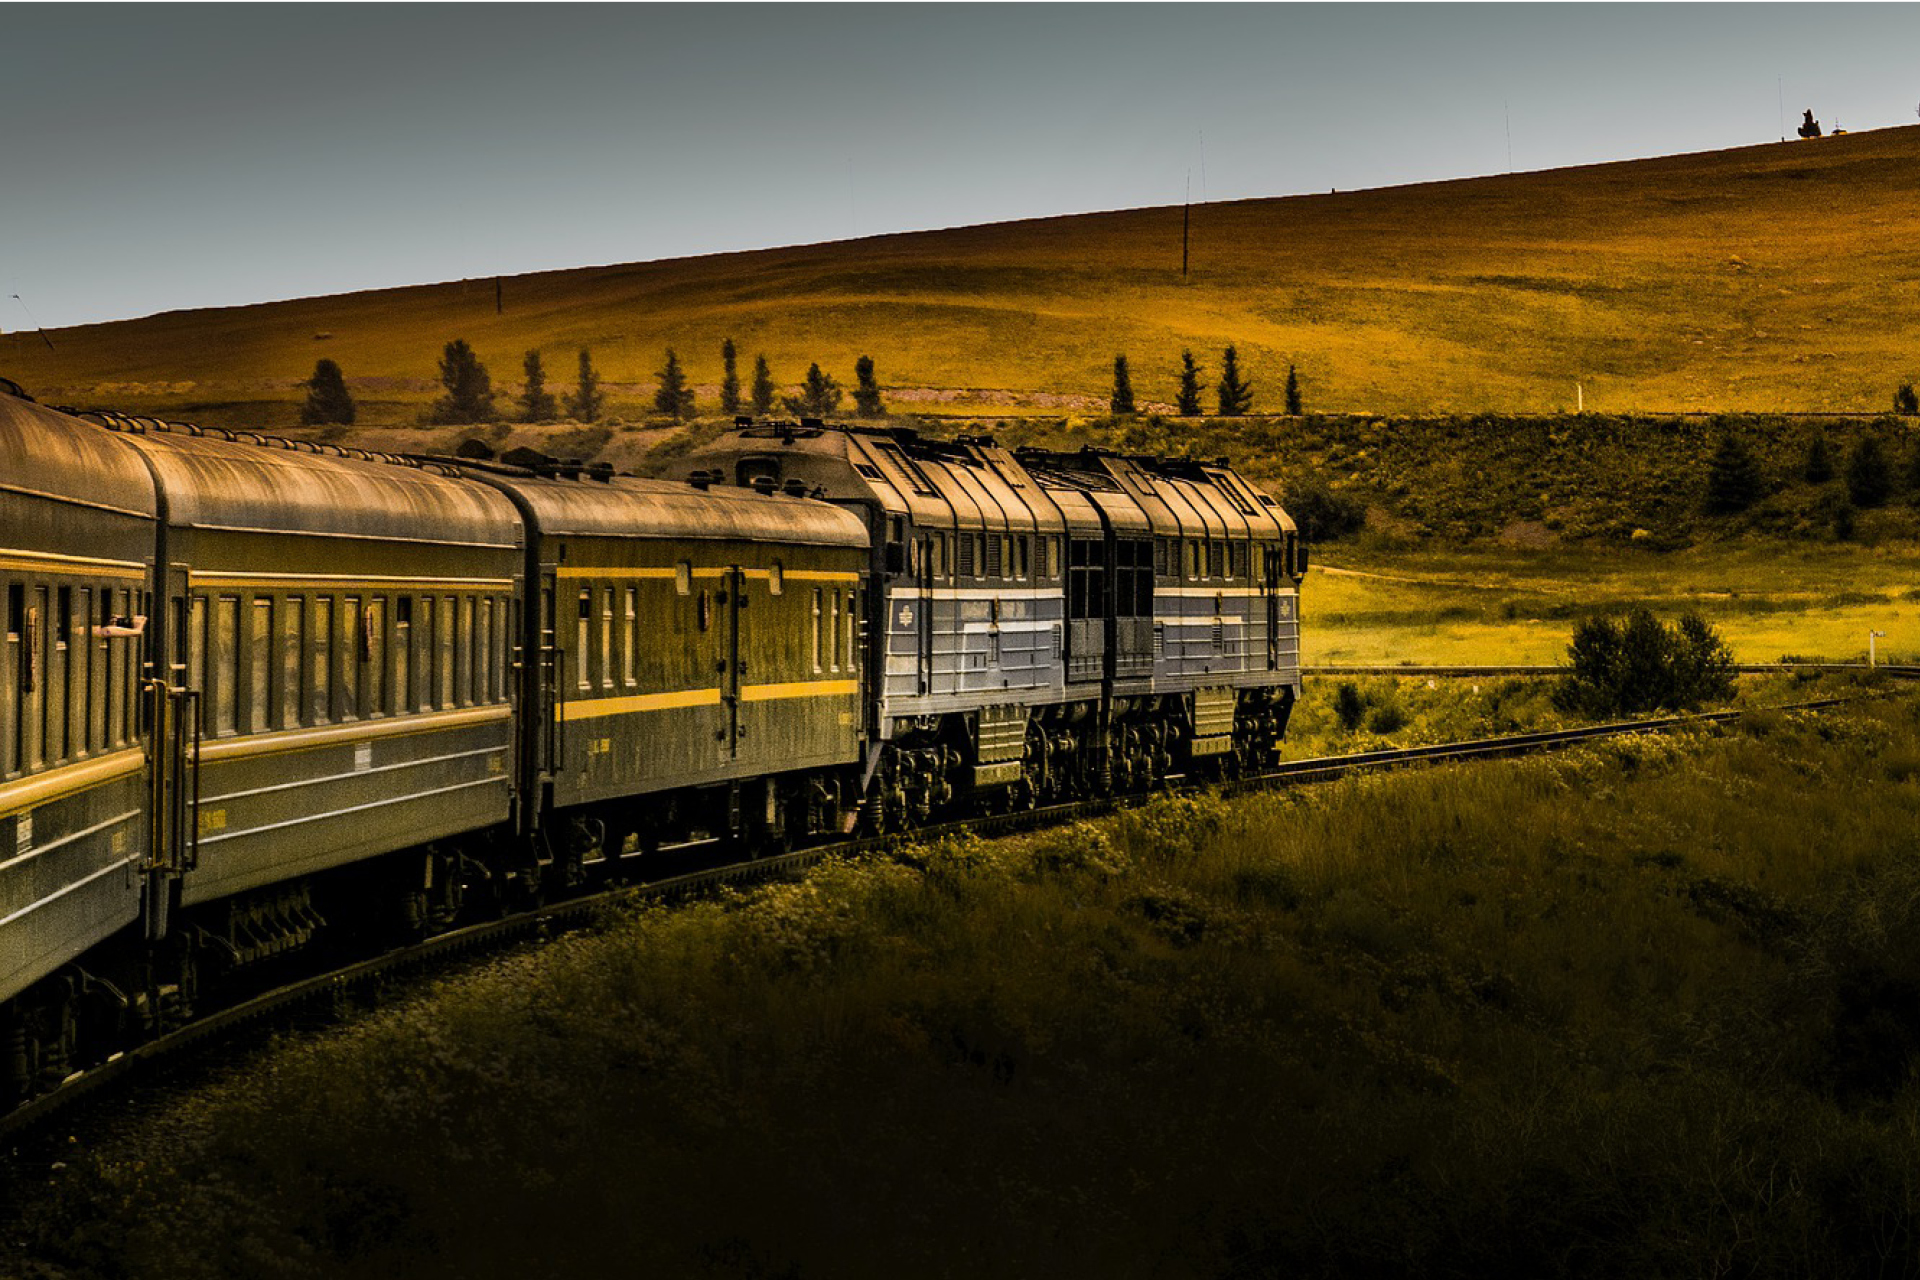 A train on the way in beautiful landscape, green fields